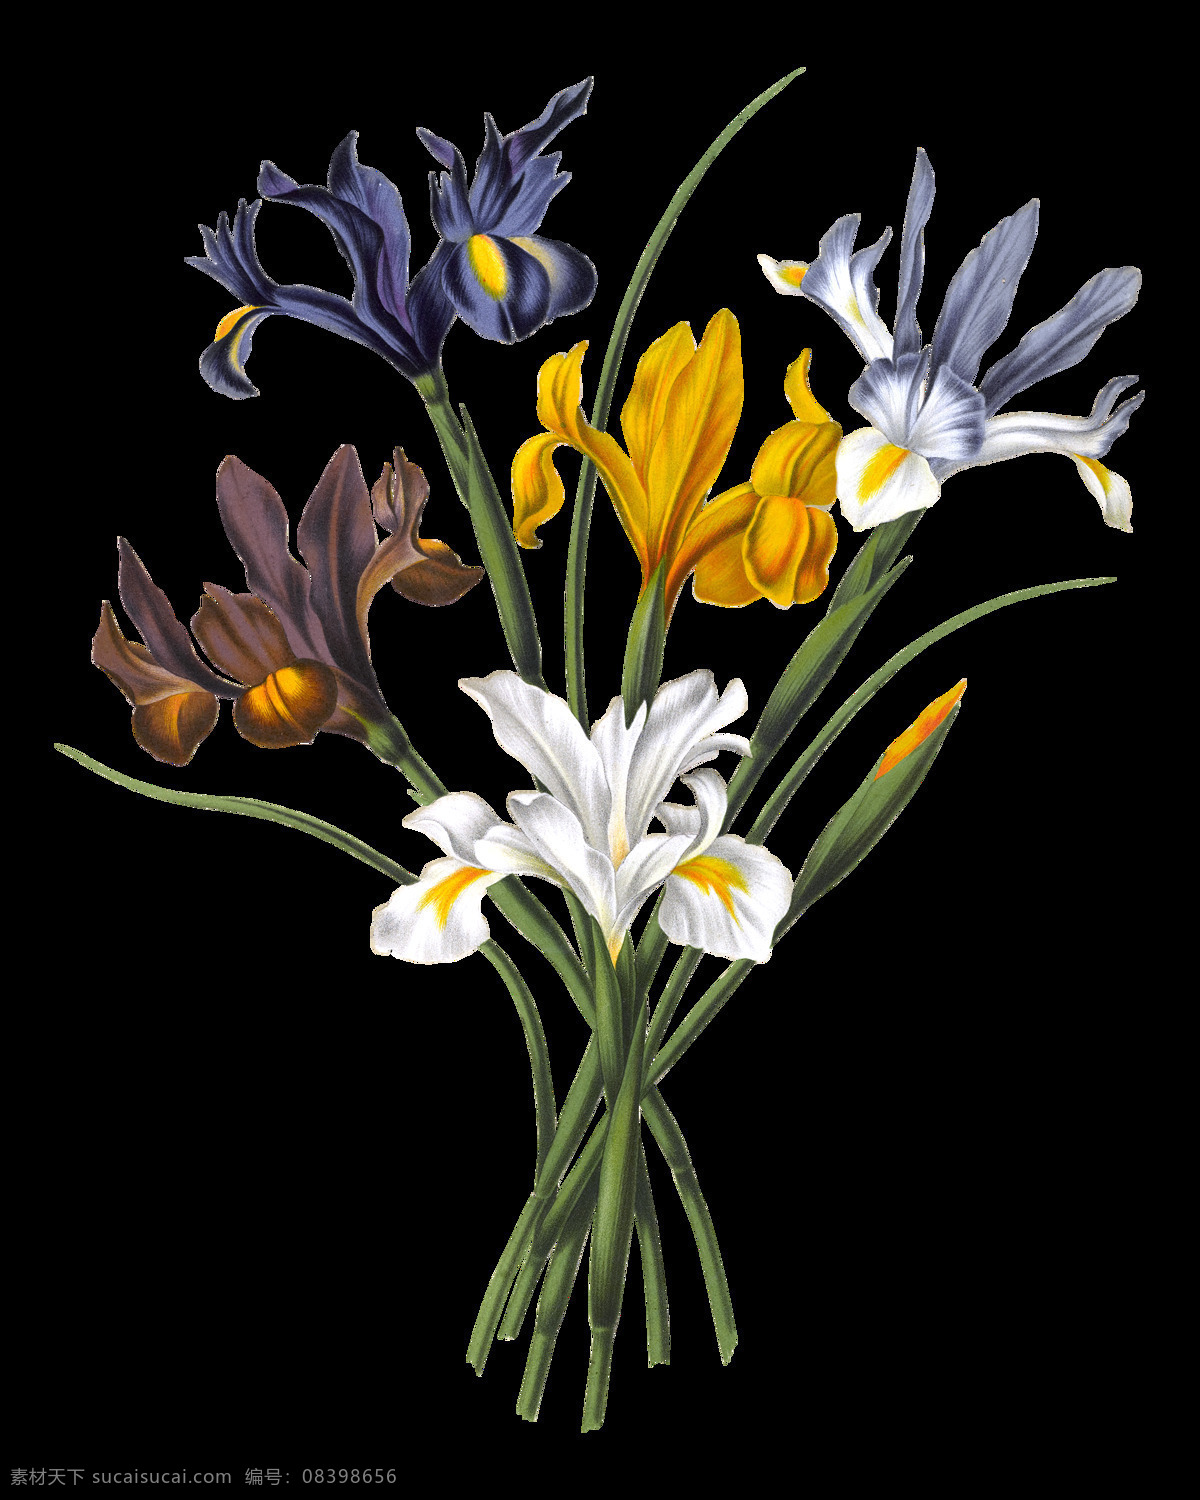 高清 兰花 元素 春季花朵素材 花草 花朵 花朵素材矢量 盛开 矢量花朵素材 矢量鲜花花朵 矢量鲜花素材 鲜花 鲜花素材 绽放